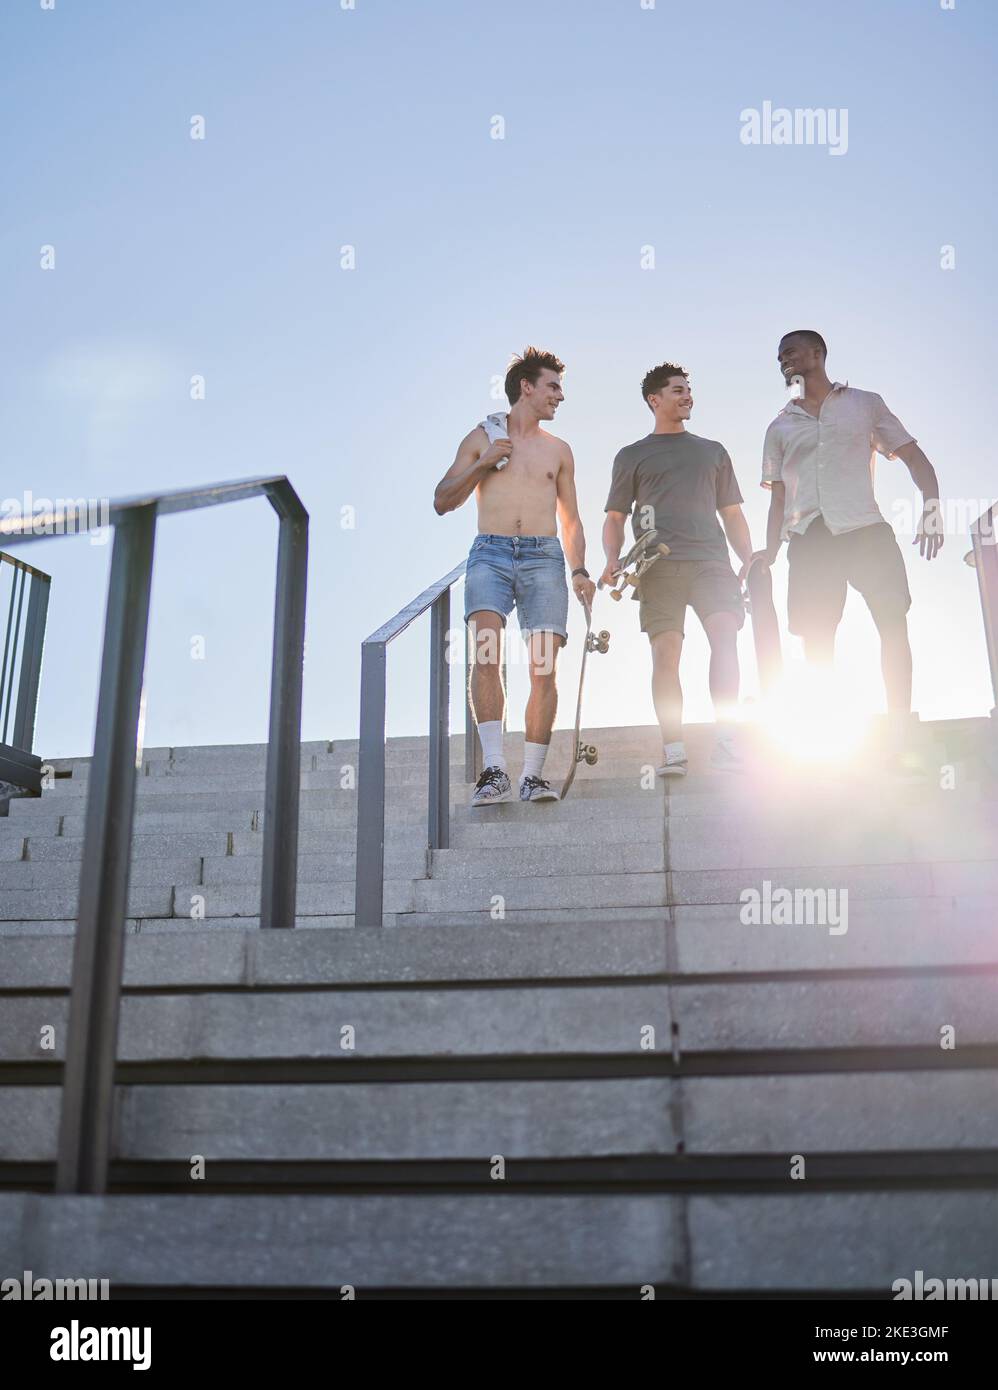 Diversity, Skateboard-Freunde oder Fitnessmenschen, die in der City Street die Treppe hinunter zum Wellness-, Workout- oder Skating-Training gehen. Glücklich, lächeln oder männlich Stockfoto